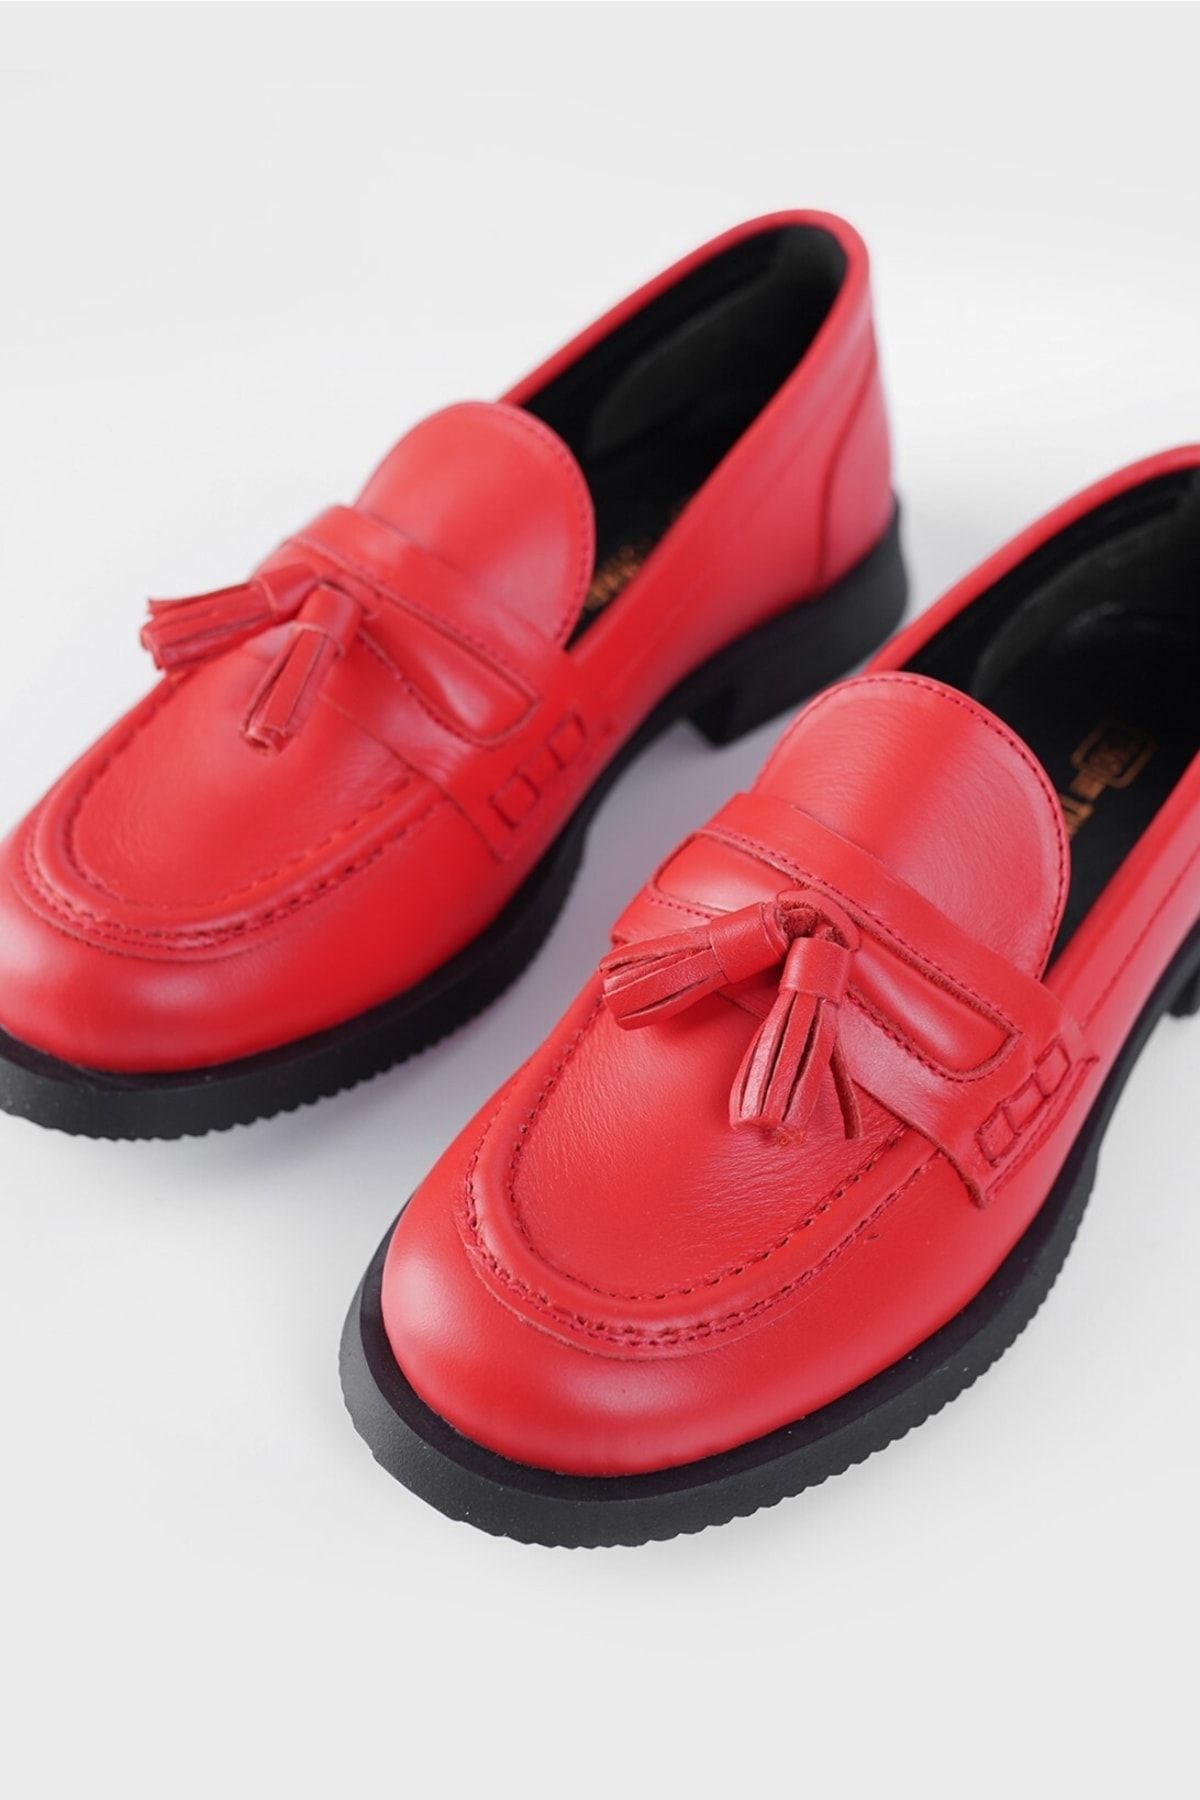 TUNAELLİ Kadın Kırmızı Hakiki Doğal Deri Püsküllü Loafer Ayakkabı